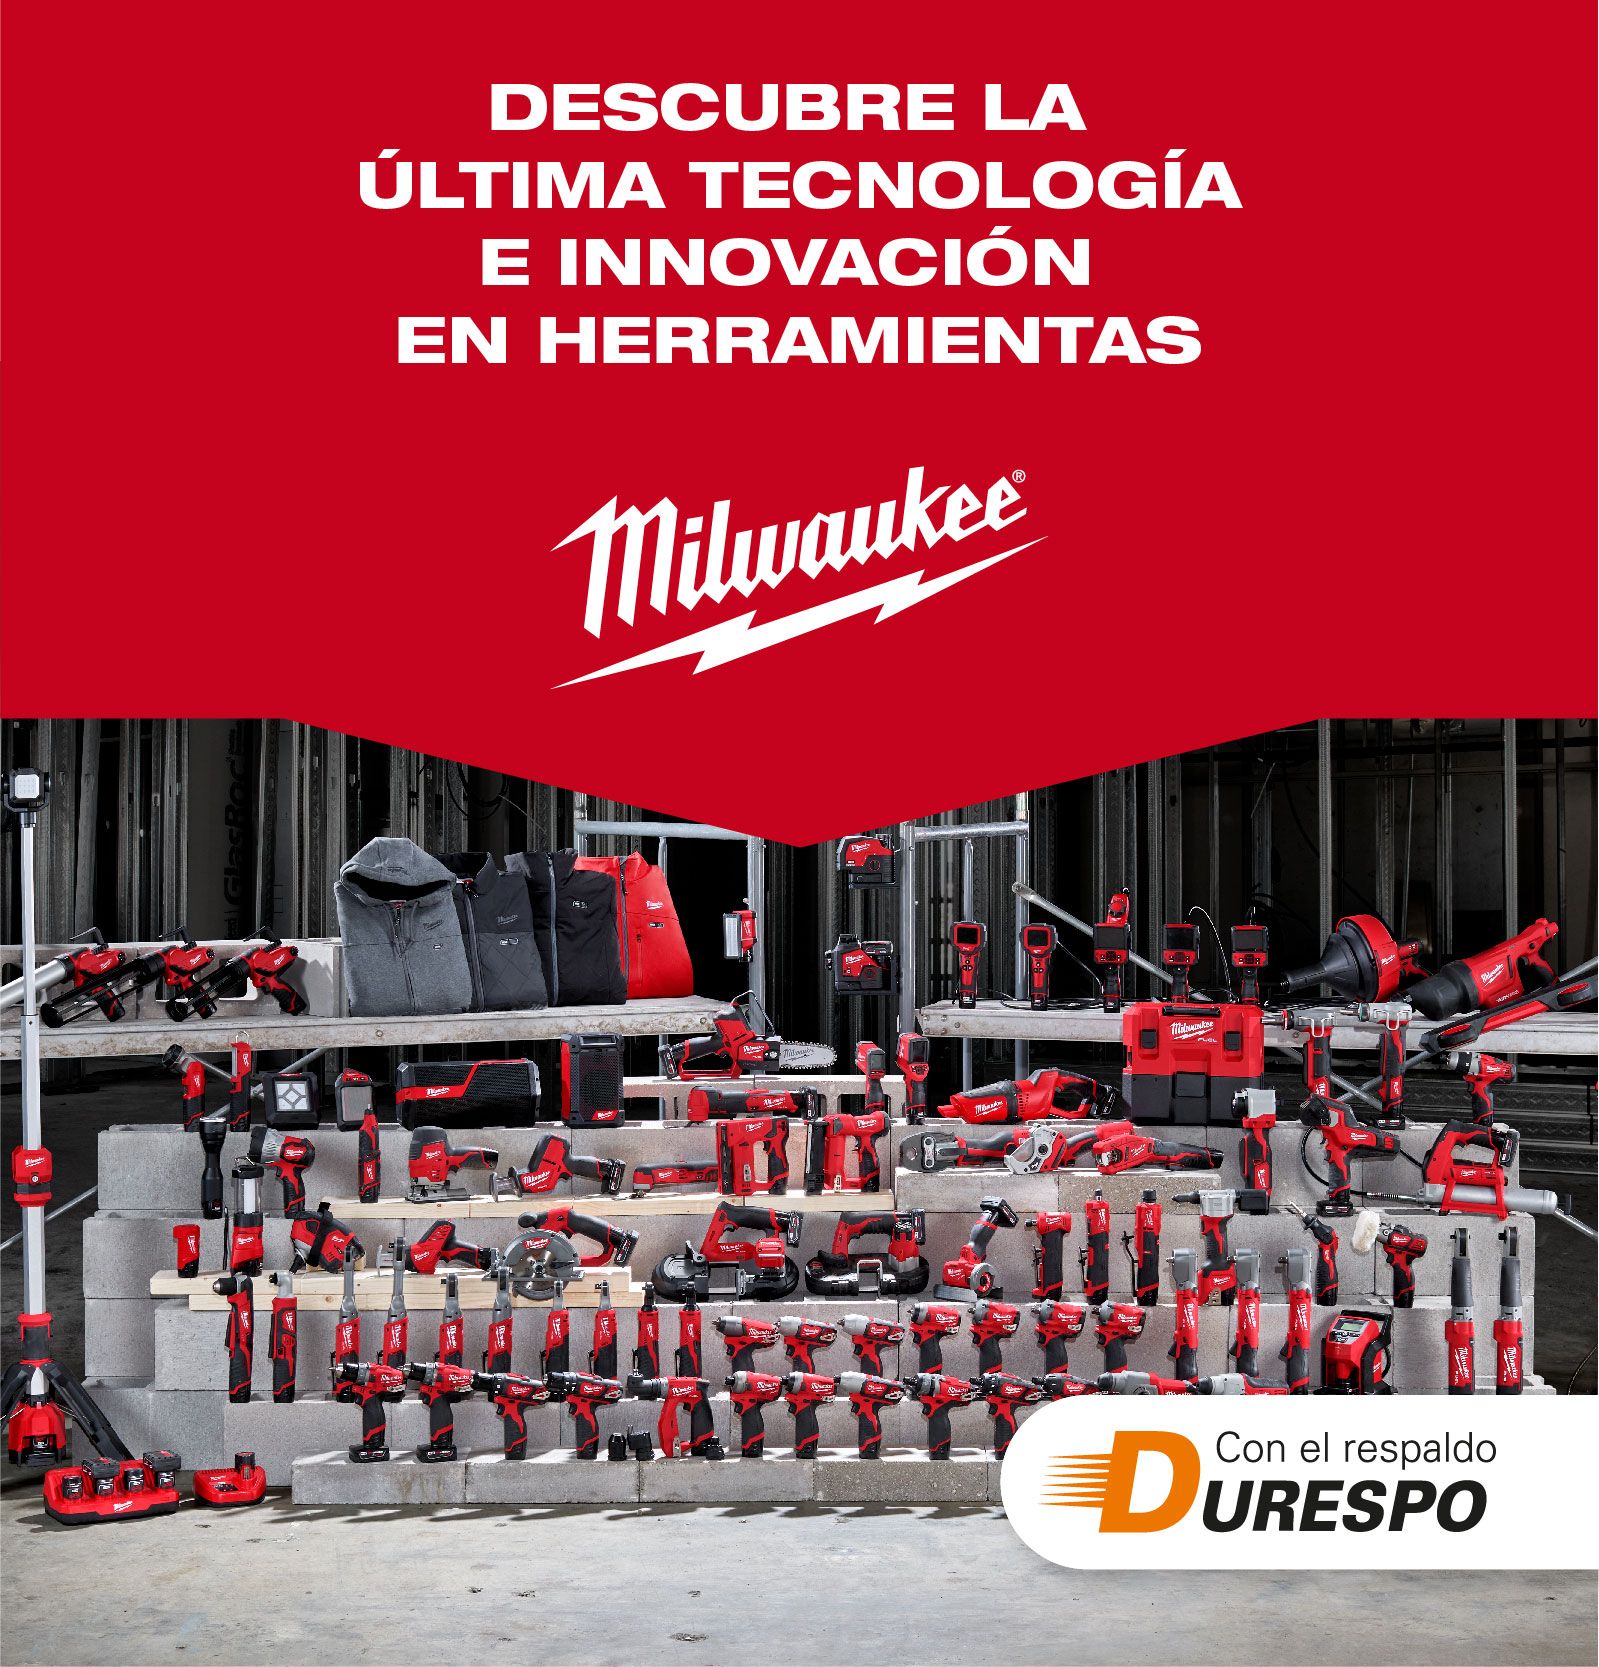 Milwaukee Tool Colombia - Durespo